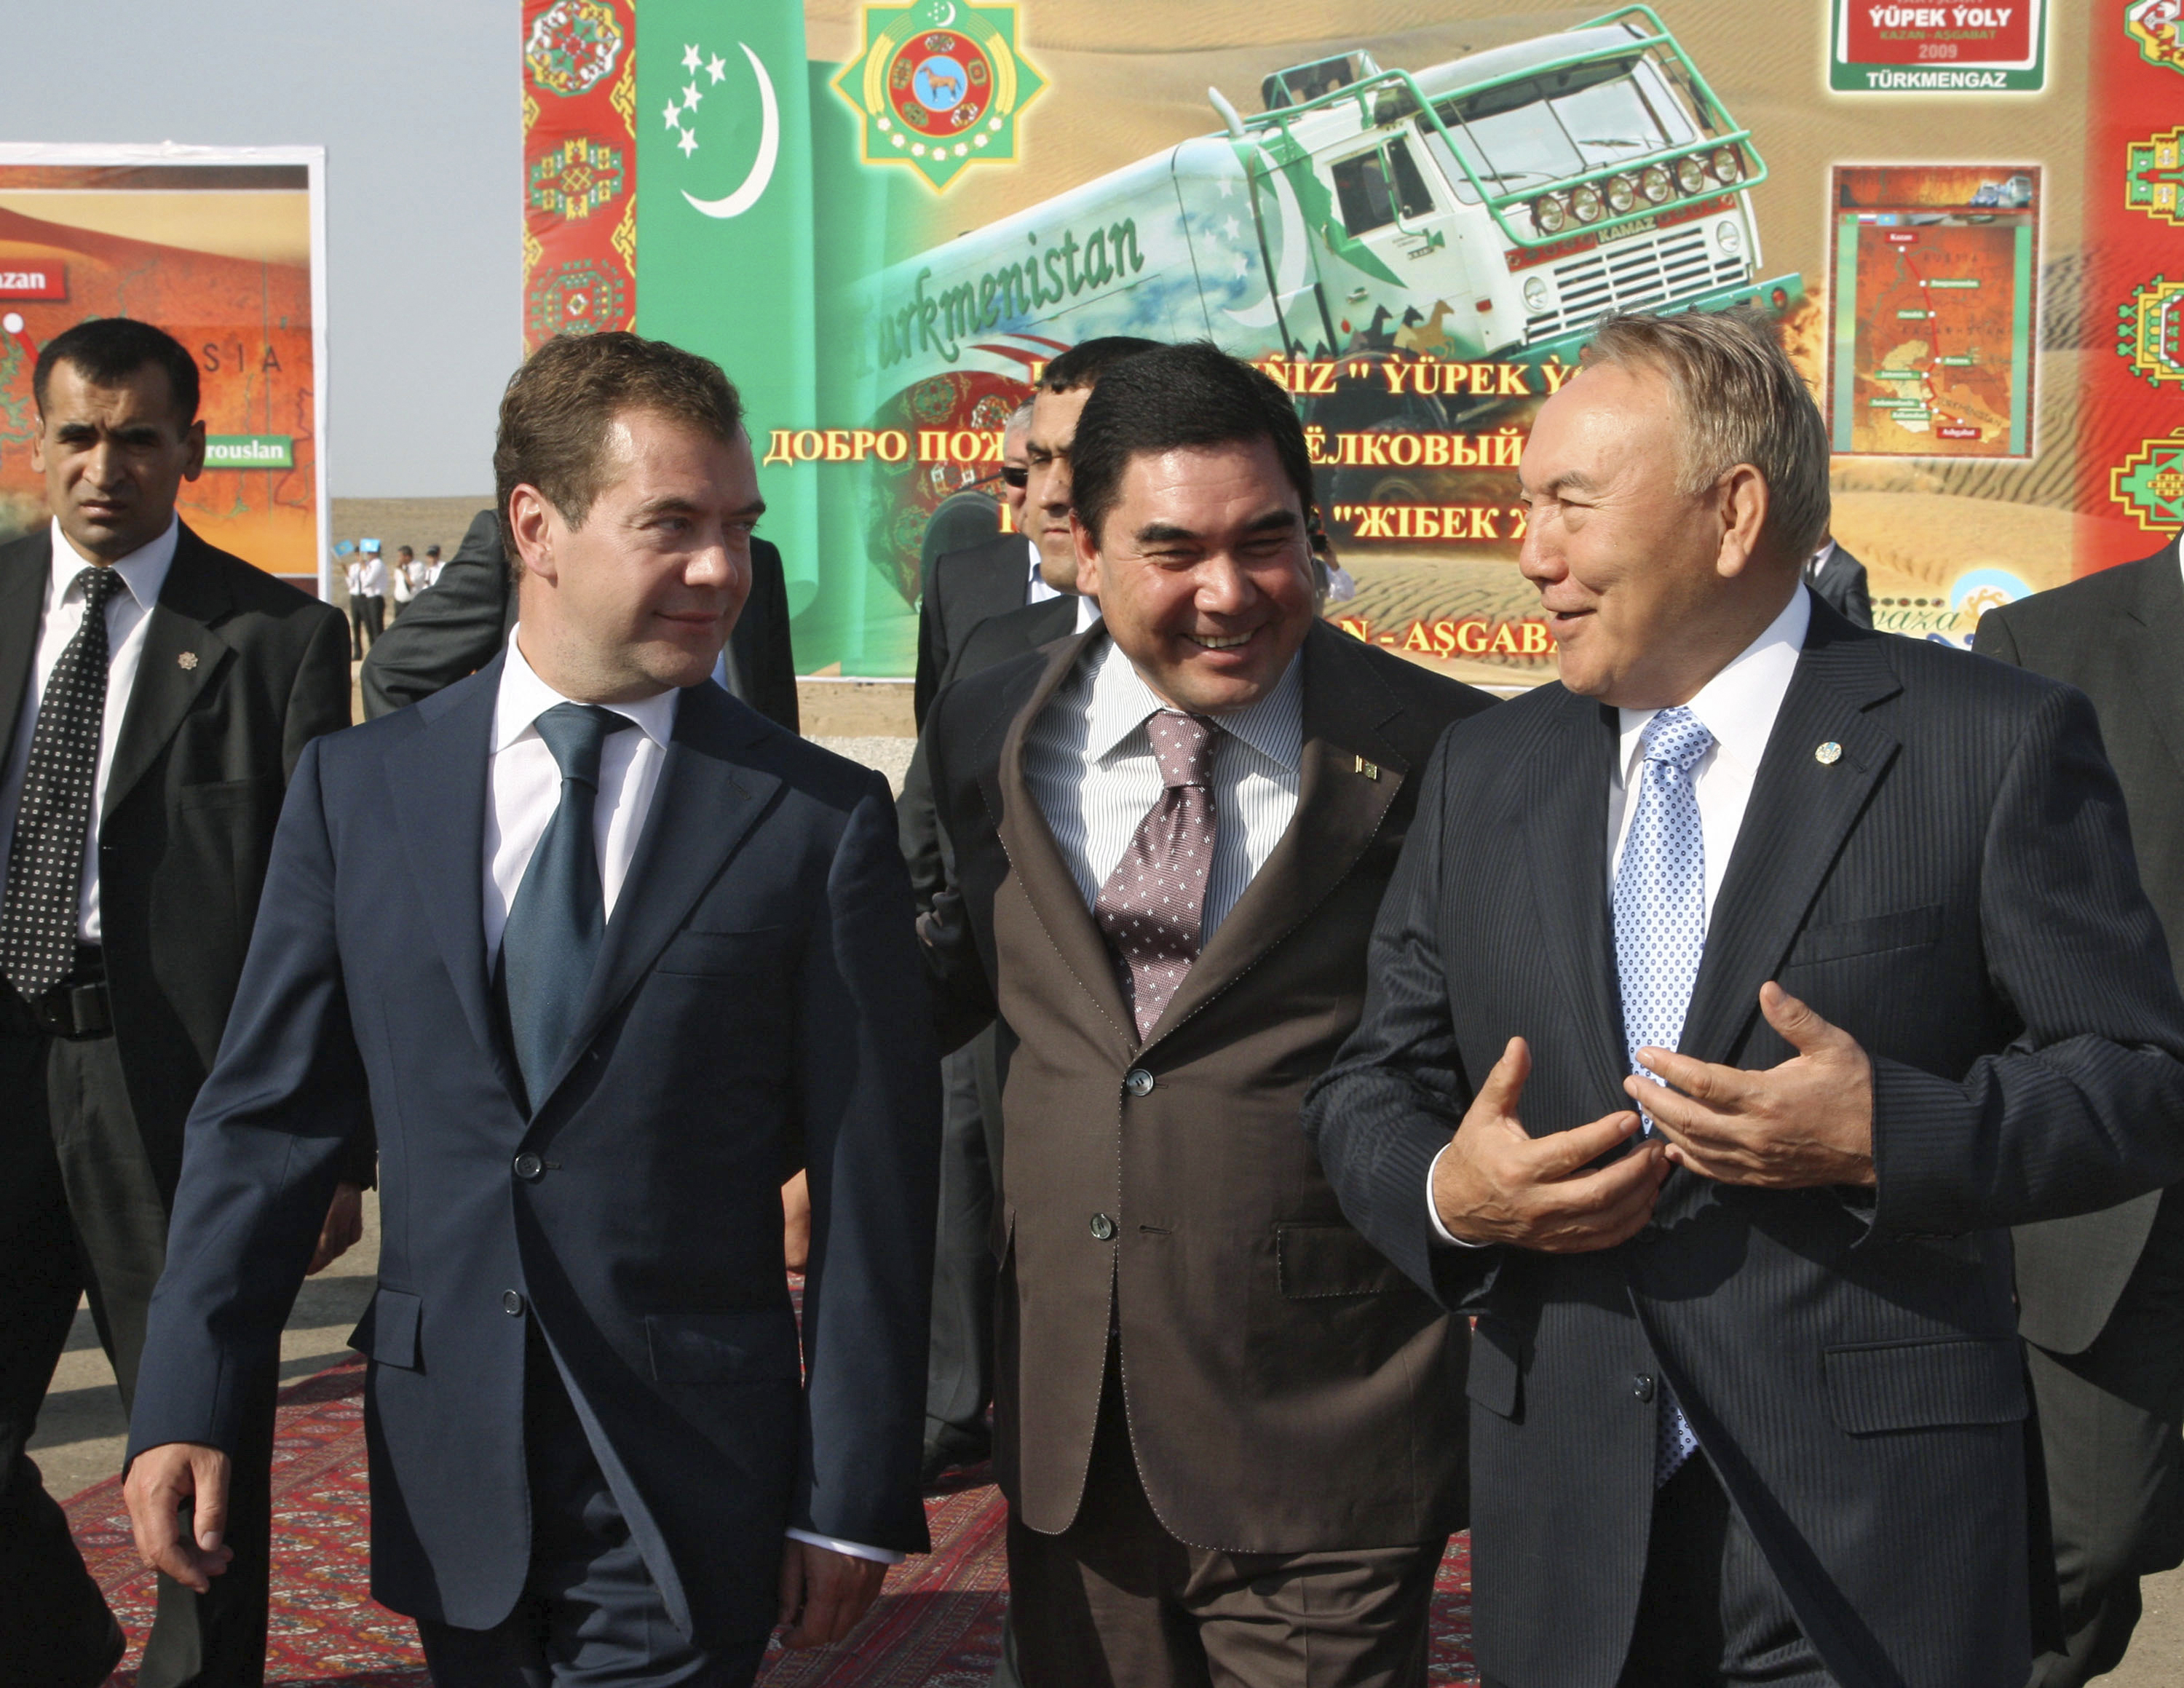  Russia's President Medvedev, Turkmenistan's President Berdymukhamedov and Kazakhstan's President Nazarbayev take part in opening ceremony in Turkmenbashi. ©REUTERS/RIA Novosti